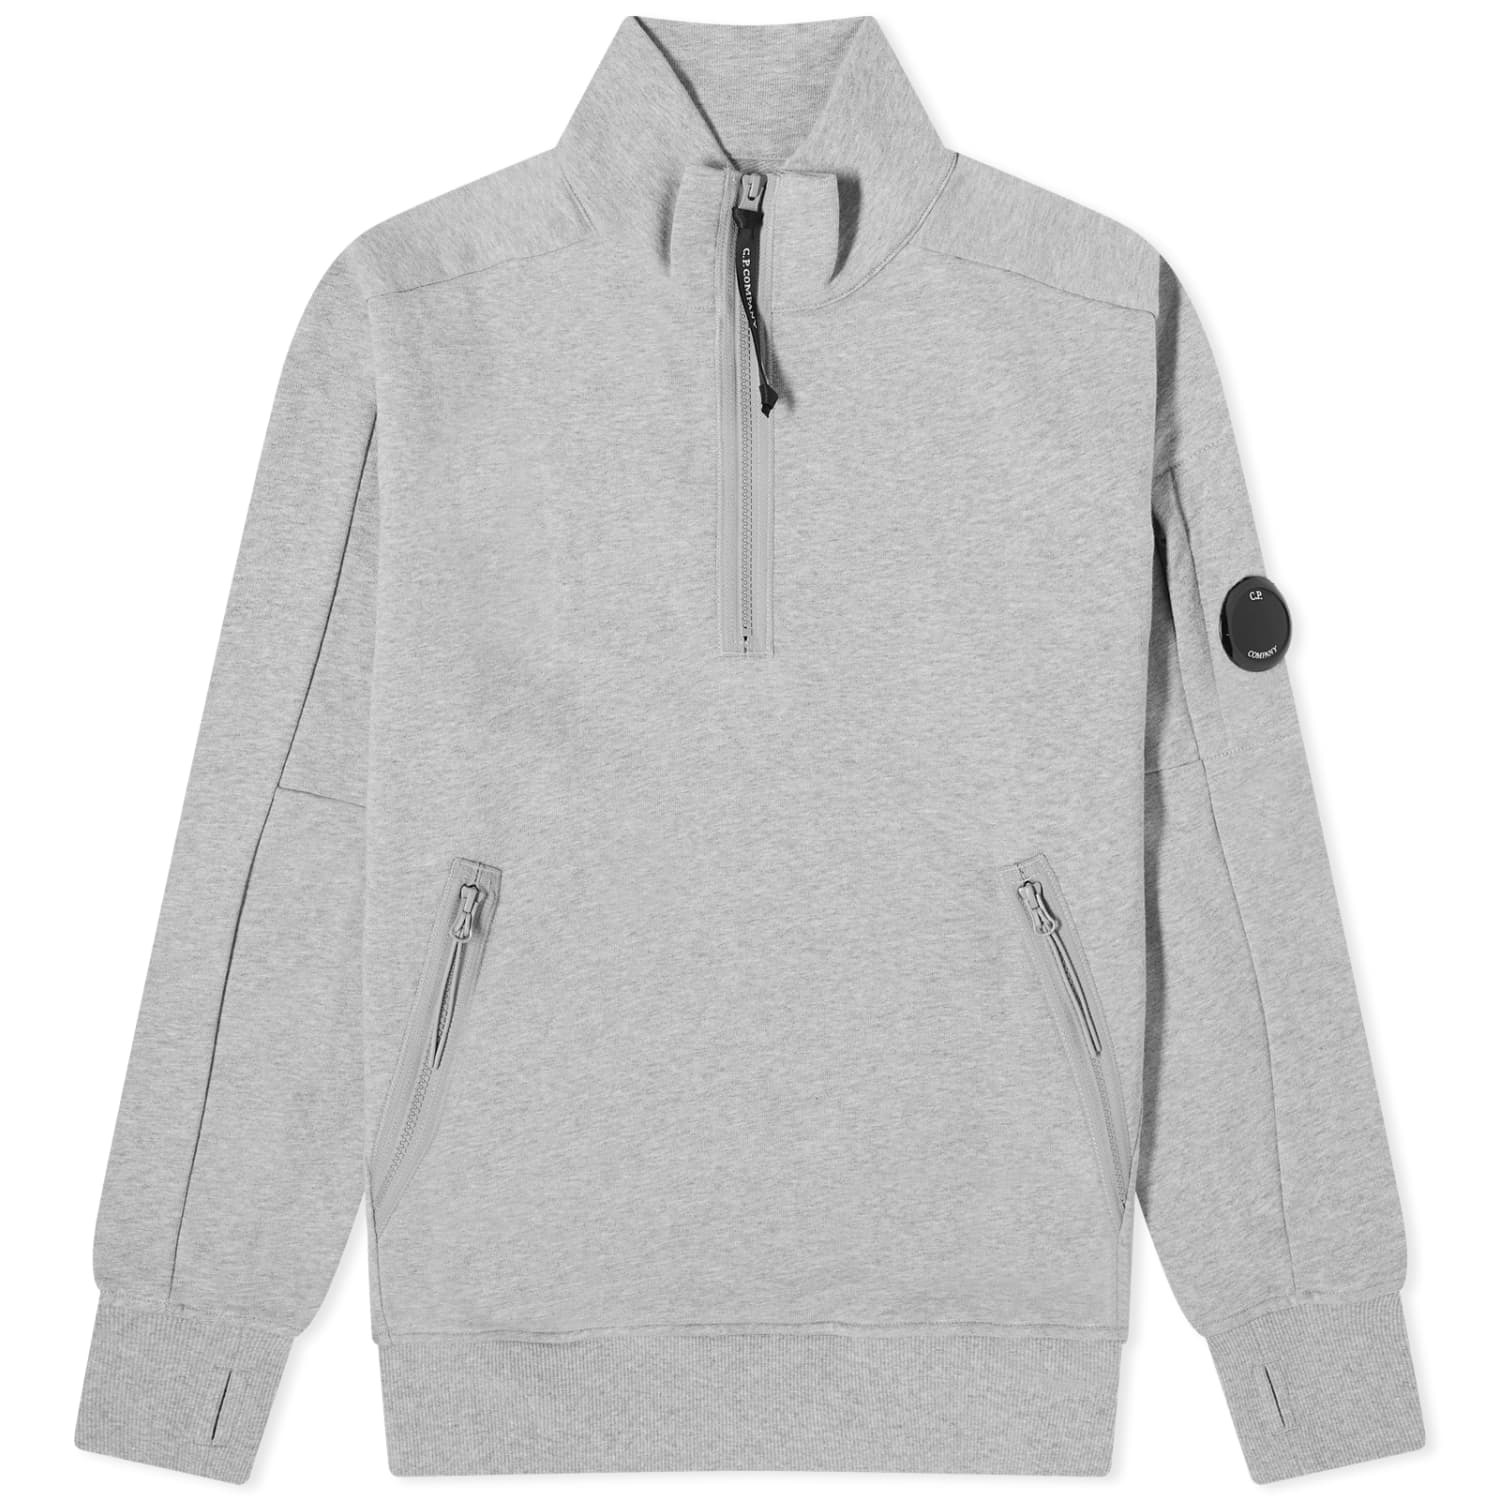 Свитшот C.P. Company Diagonal Raised Fleece Zipped, серый меланж